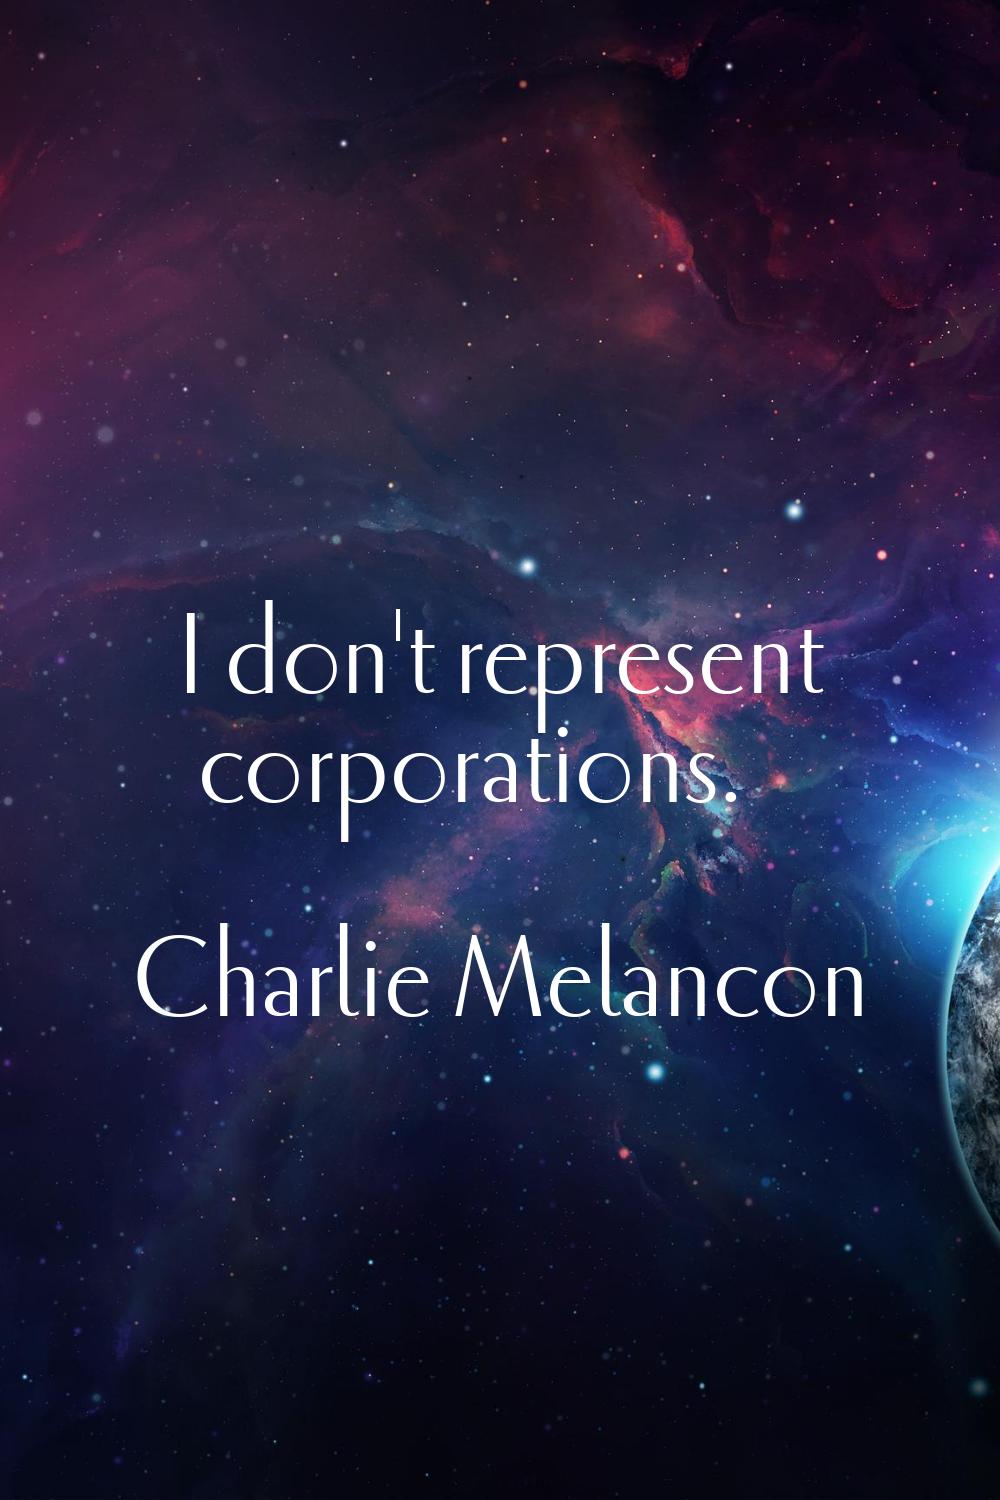 I don't represent corporations.